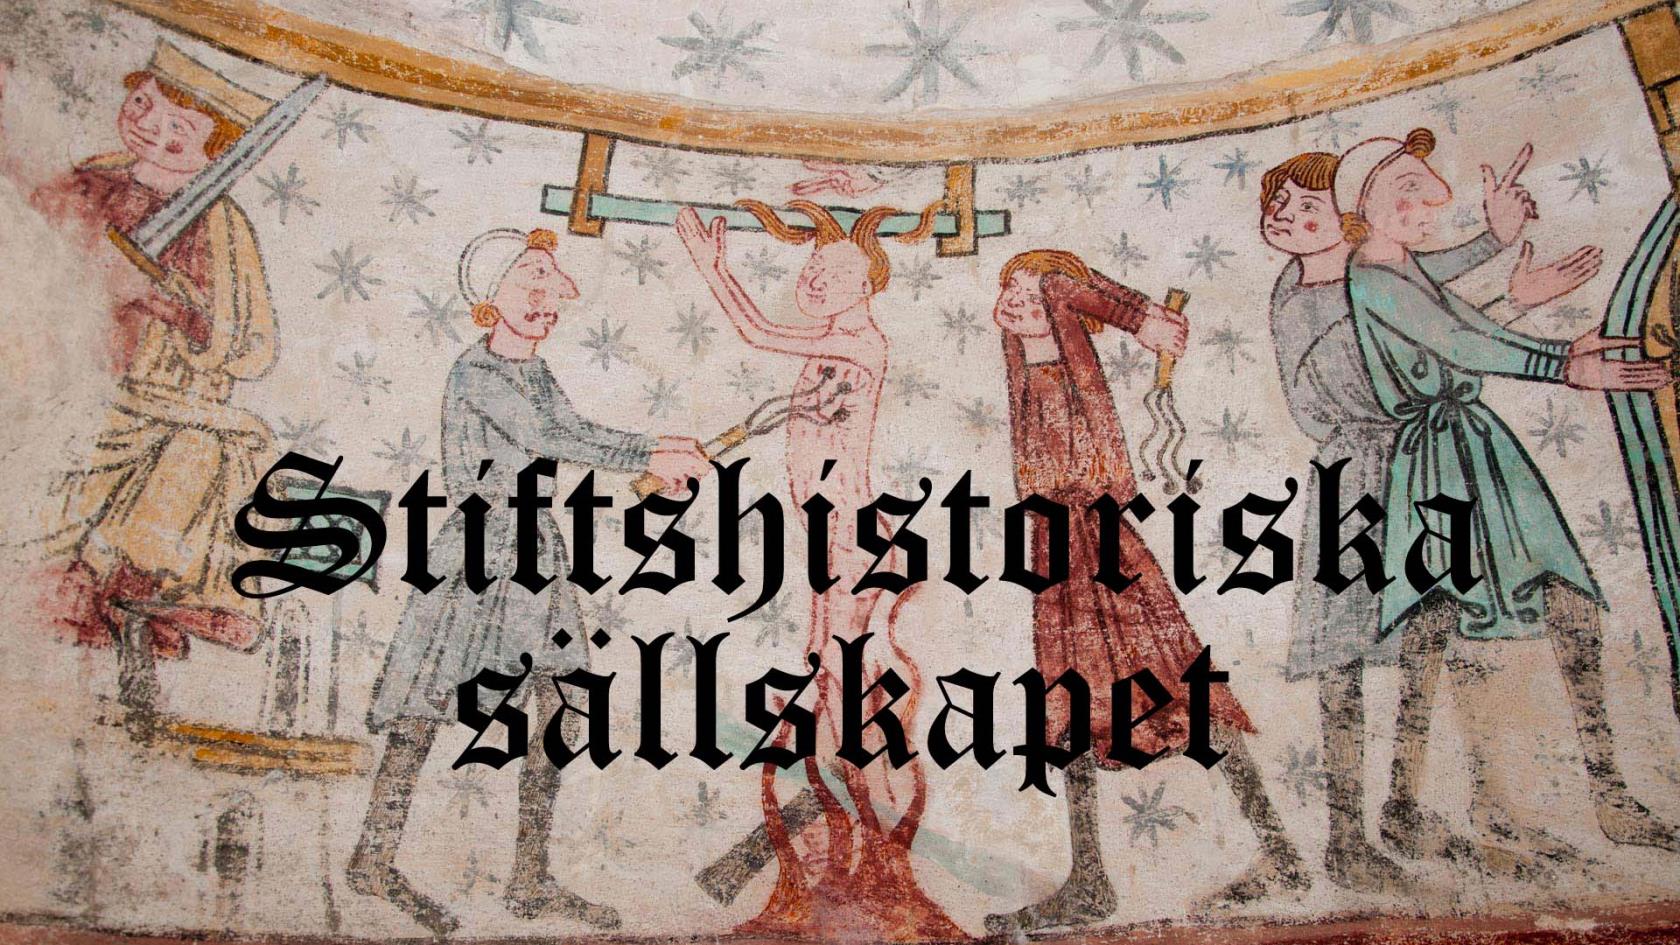 Bild av medeltida väggmålning från Hackås kyrka. Över bilden står texten "Stiftshistoriska sällskapet".